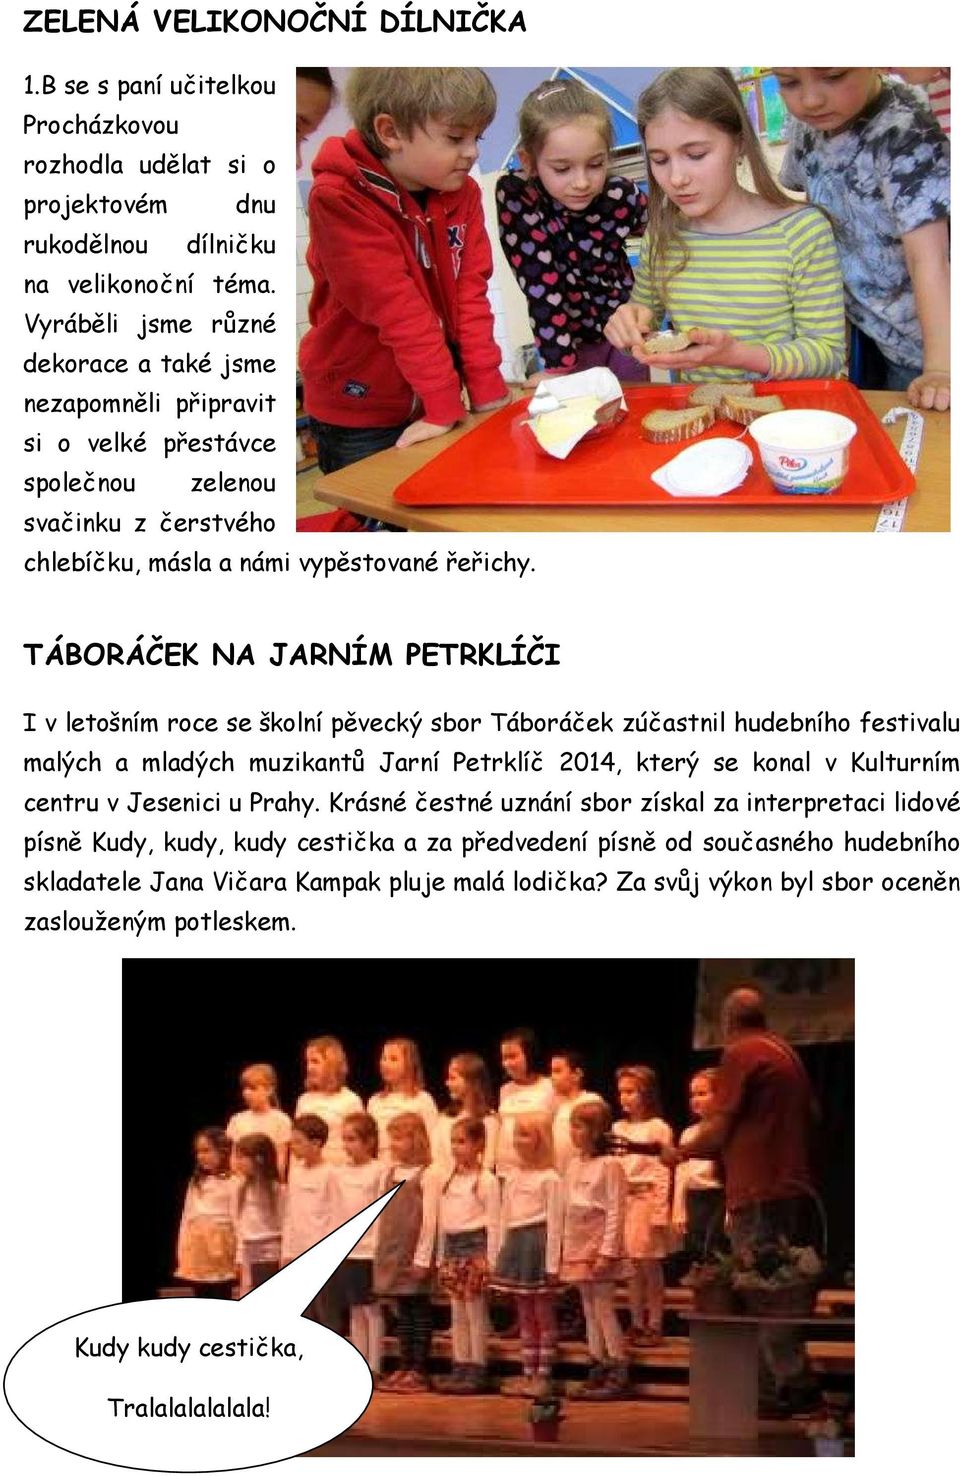 TÁBORÁČEK NA JARNÍM PETRKLÍČI I v letošním roce se školní pěvecký sbor Táboráček zúčastnil hudebního festivalu malých a mladých muzikantů Jarní Petrklíč 2014, který se konal v Kulturním centru v